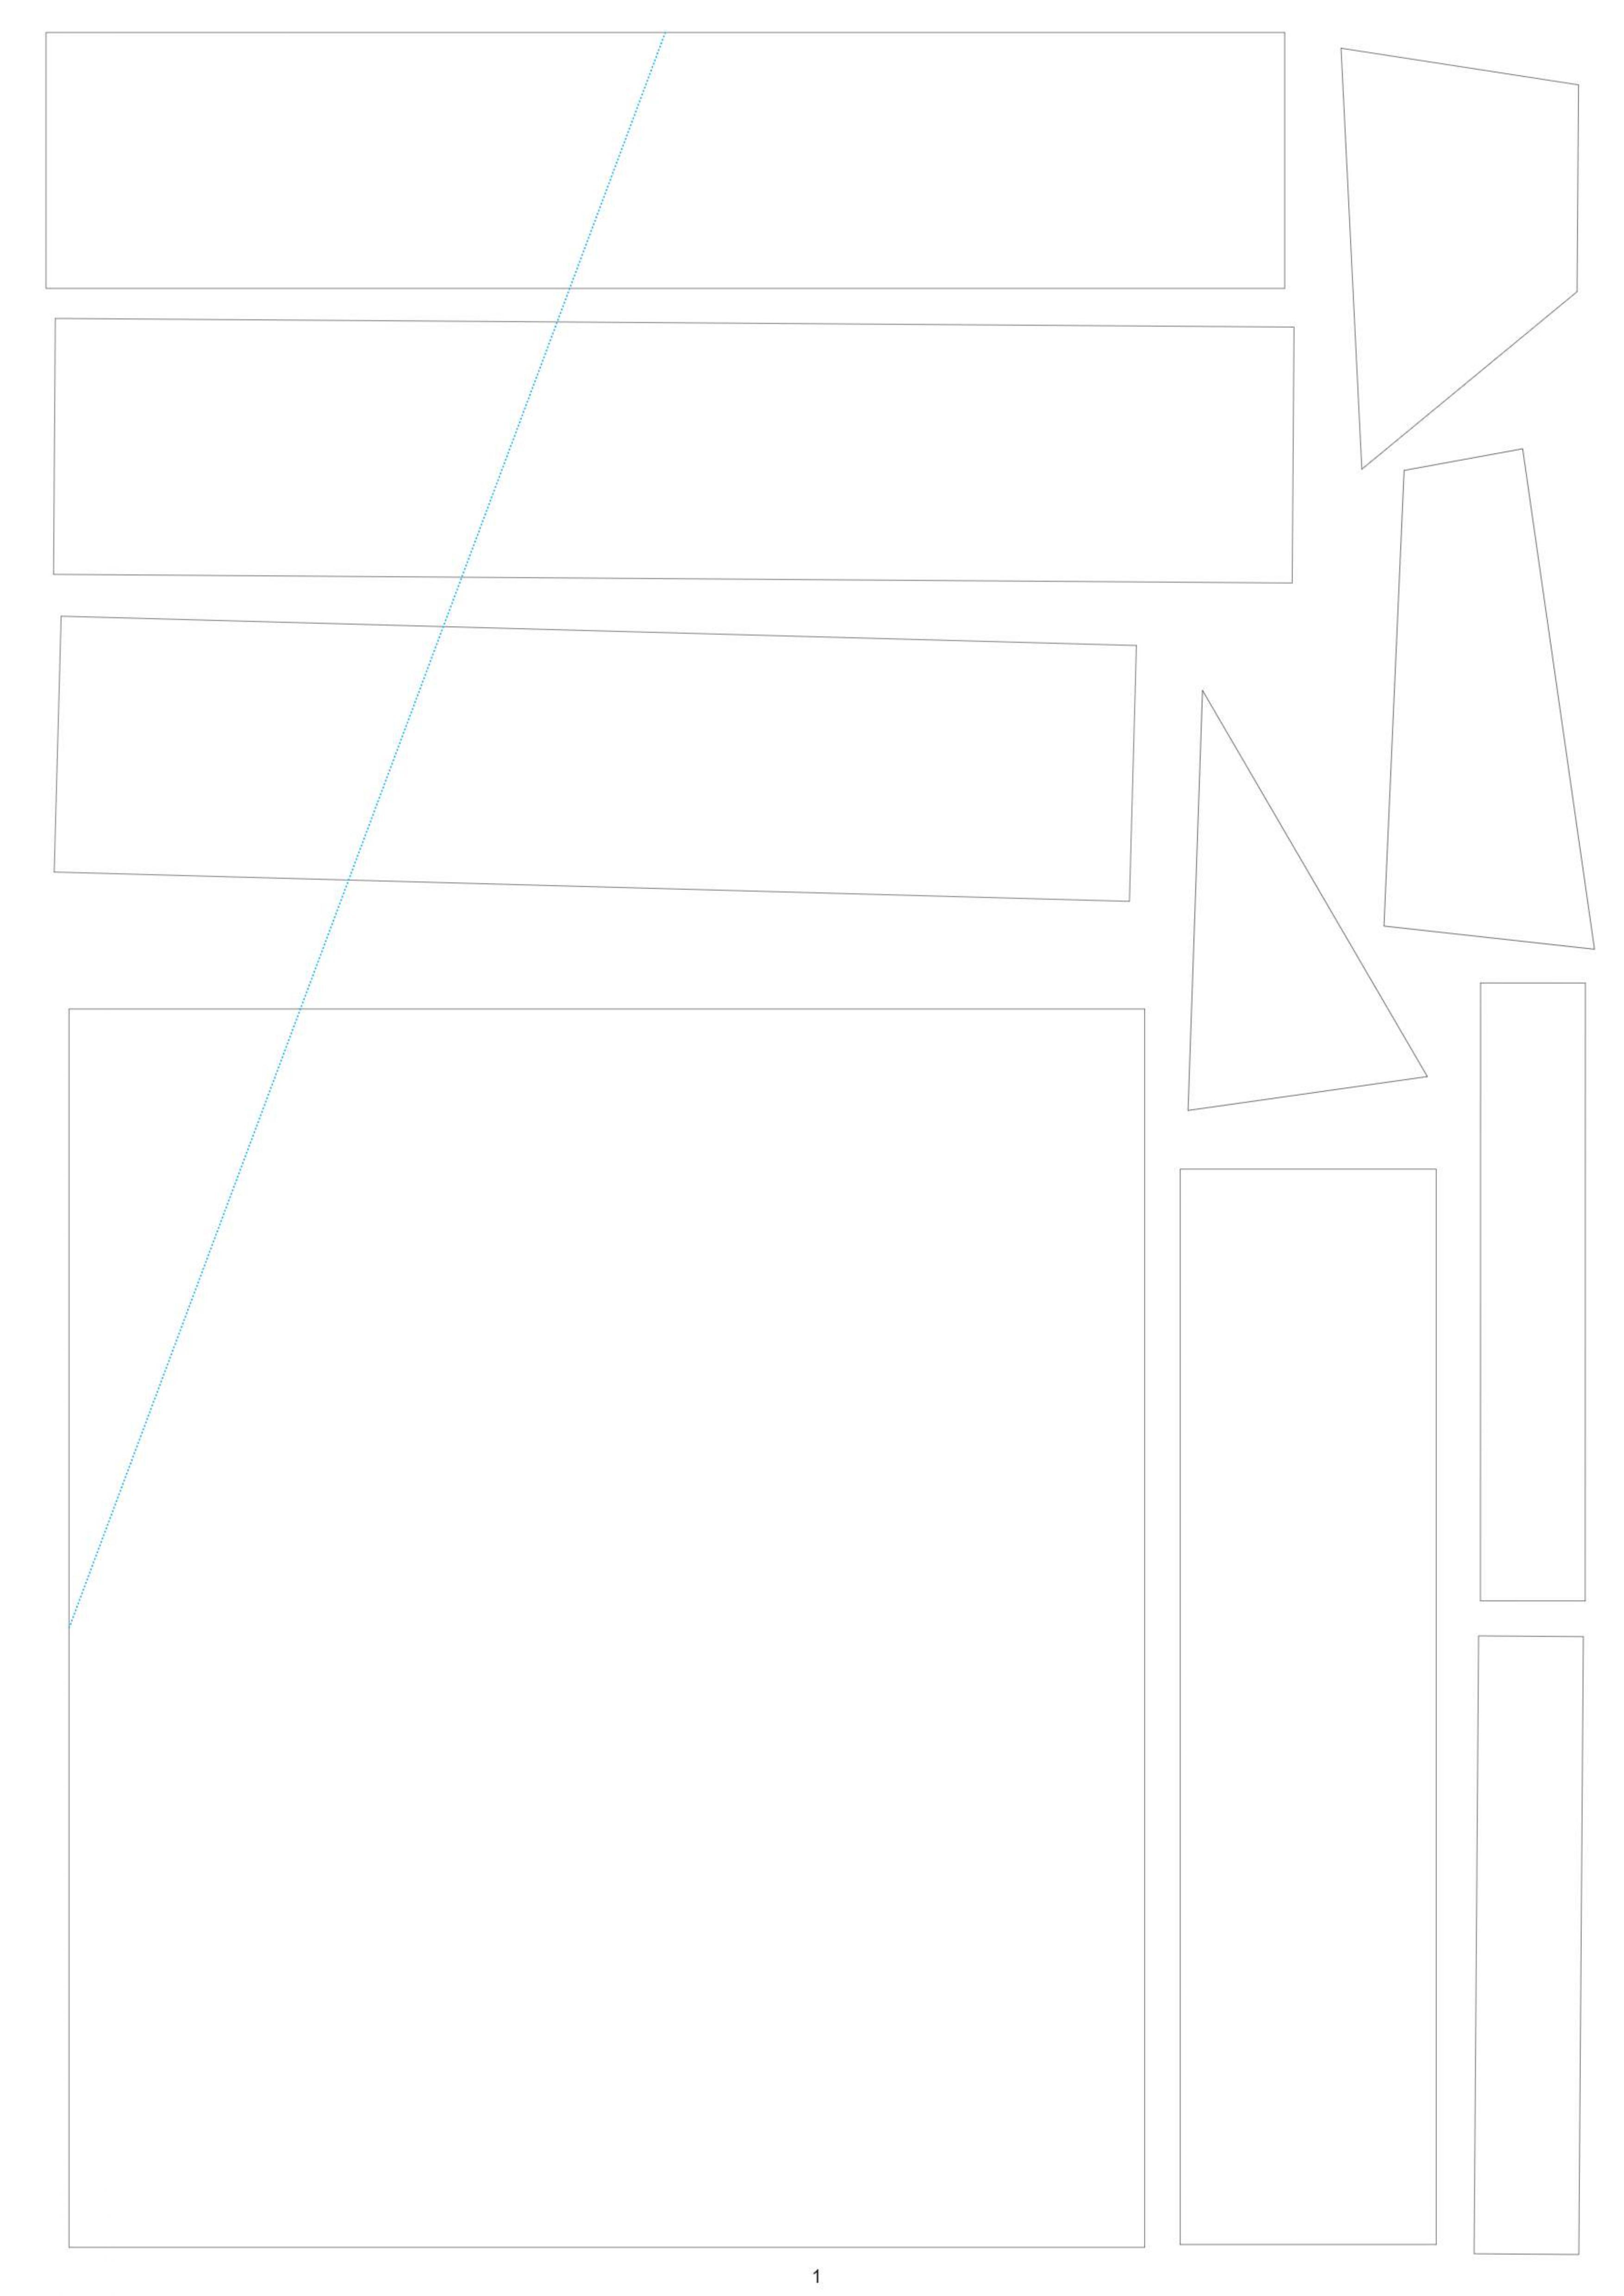 ITTT Blueprint Cutout 1.jpg